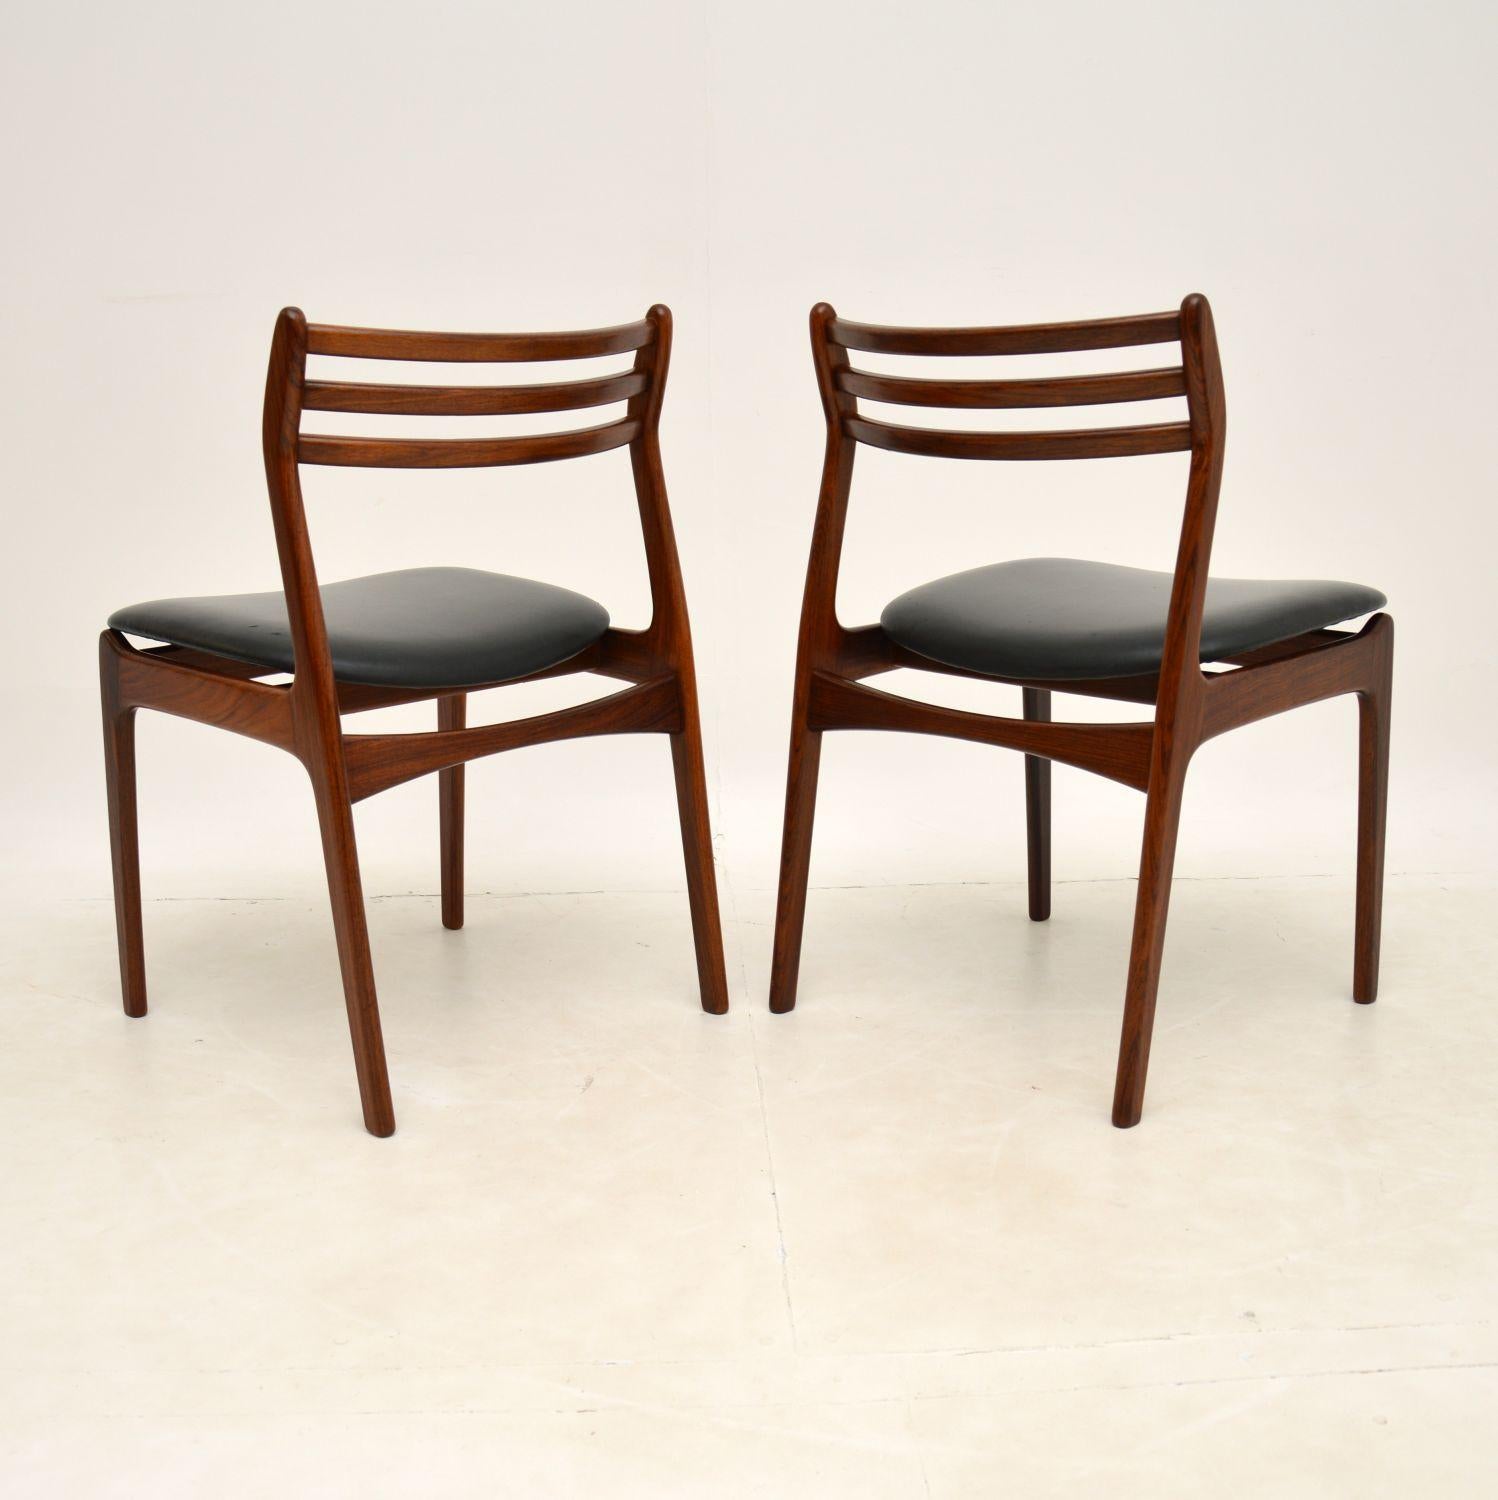 20th Century Pair of Danish Chairs by P.E. Jørgensen for Farso Stolefabrik